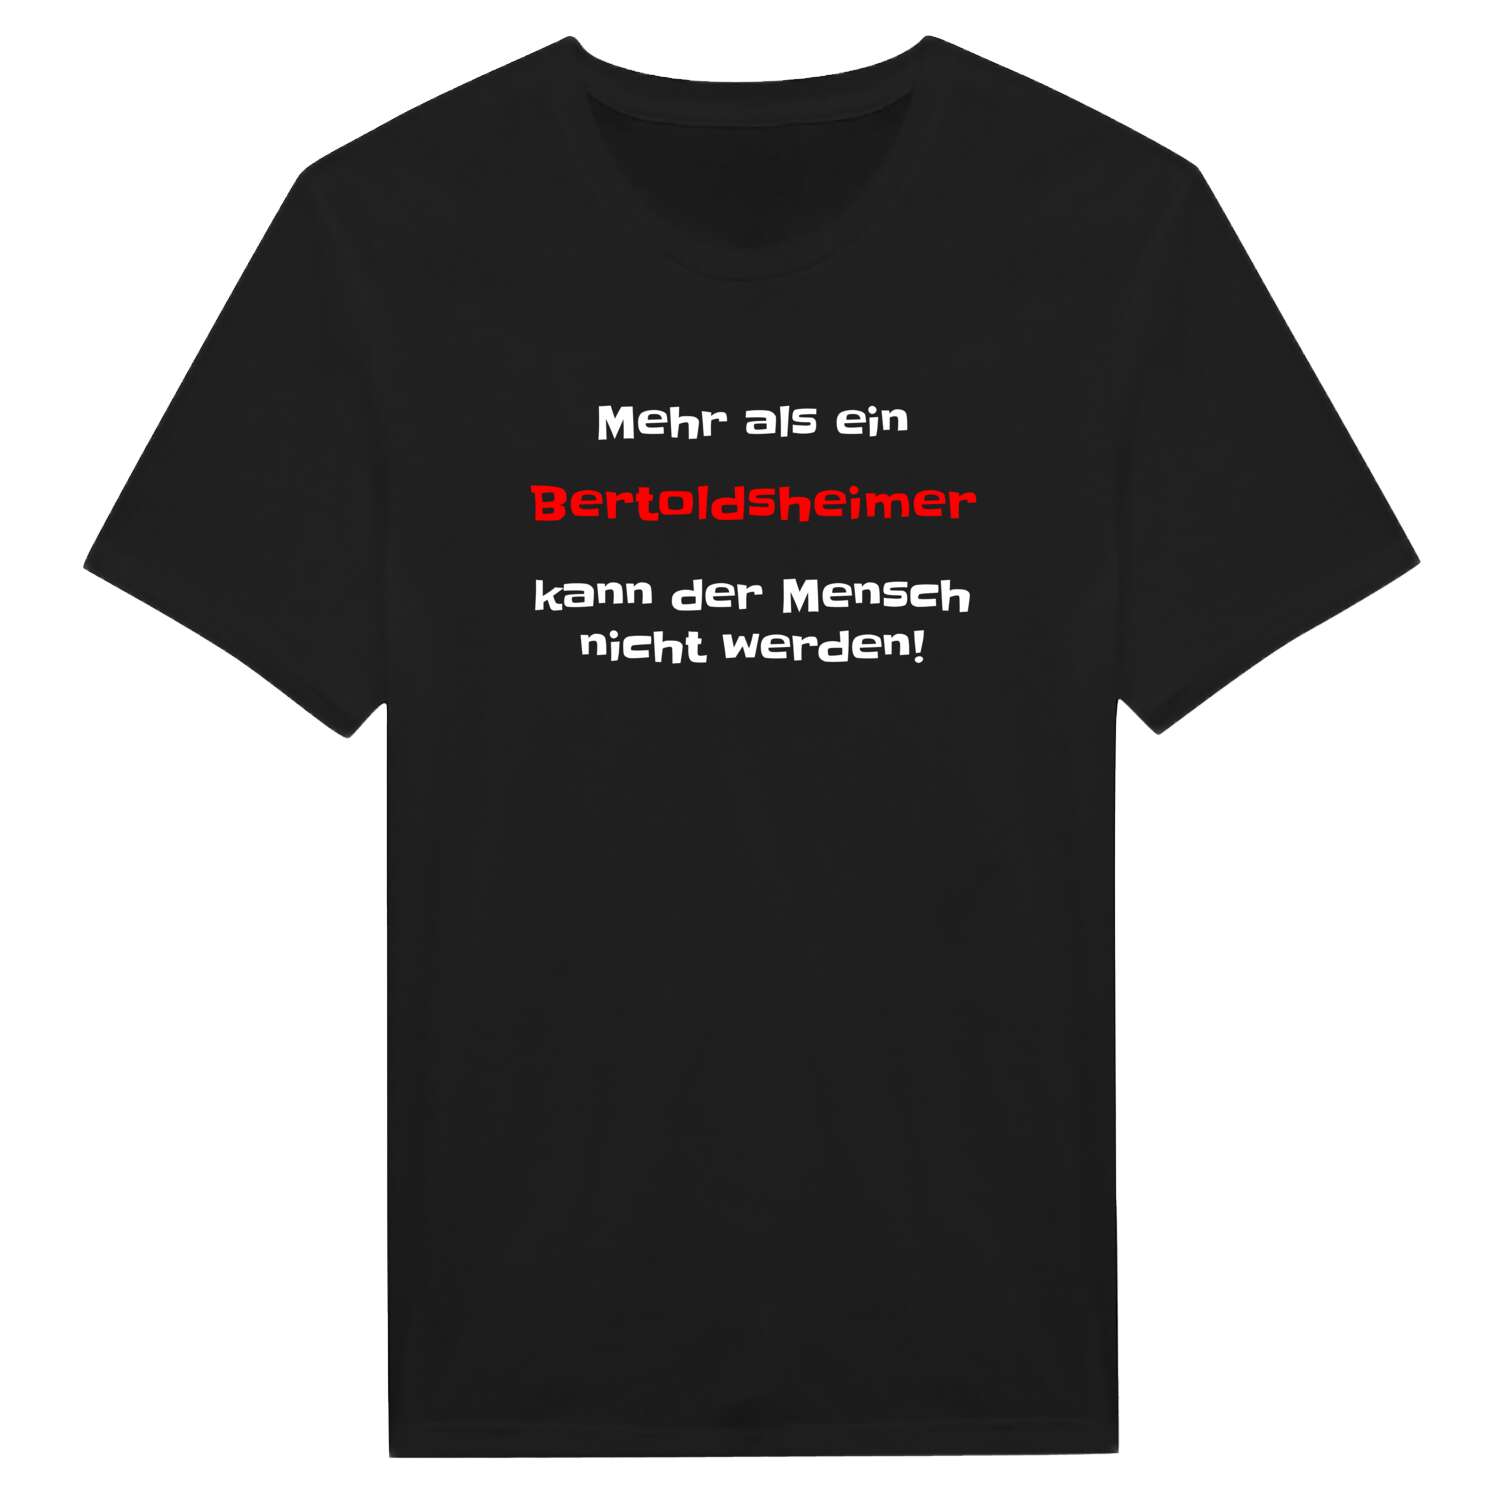 Bertoldsheim T-Shirt »Mehr als ein«